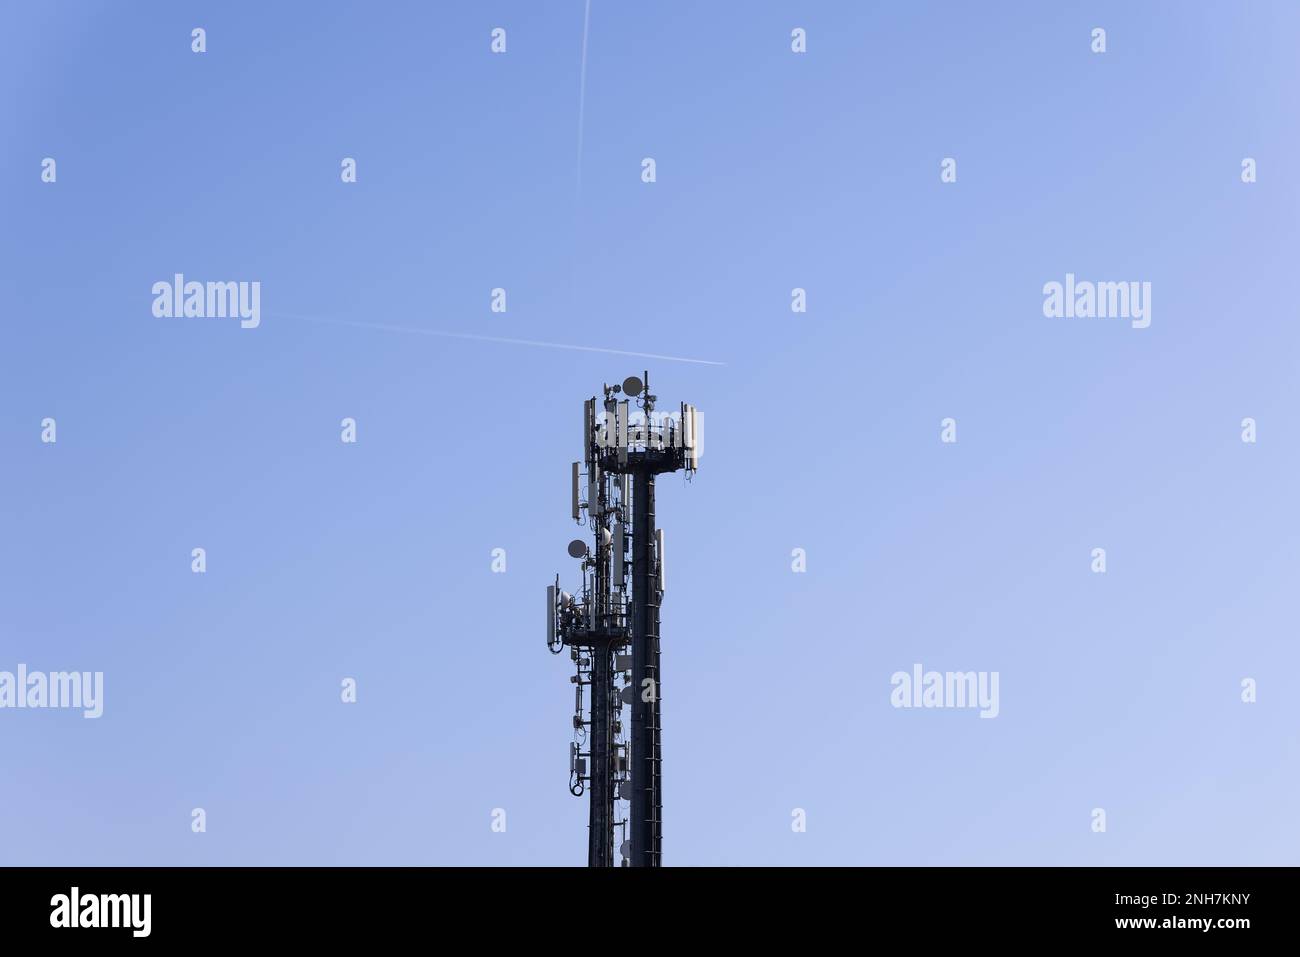 Torre per telecomunicazioni con antenne cellulari e ripetitori contro un cielo blu chiaro con due tracce di velivoli volanti Foto Stock